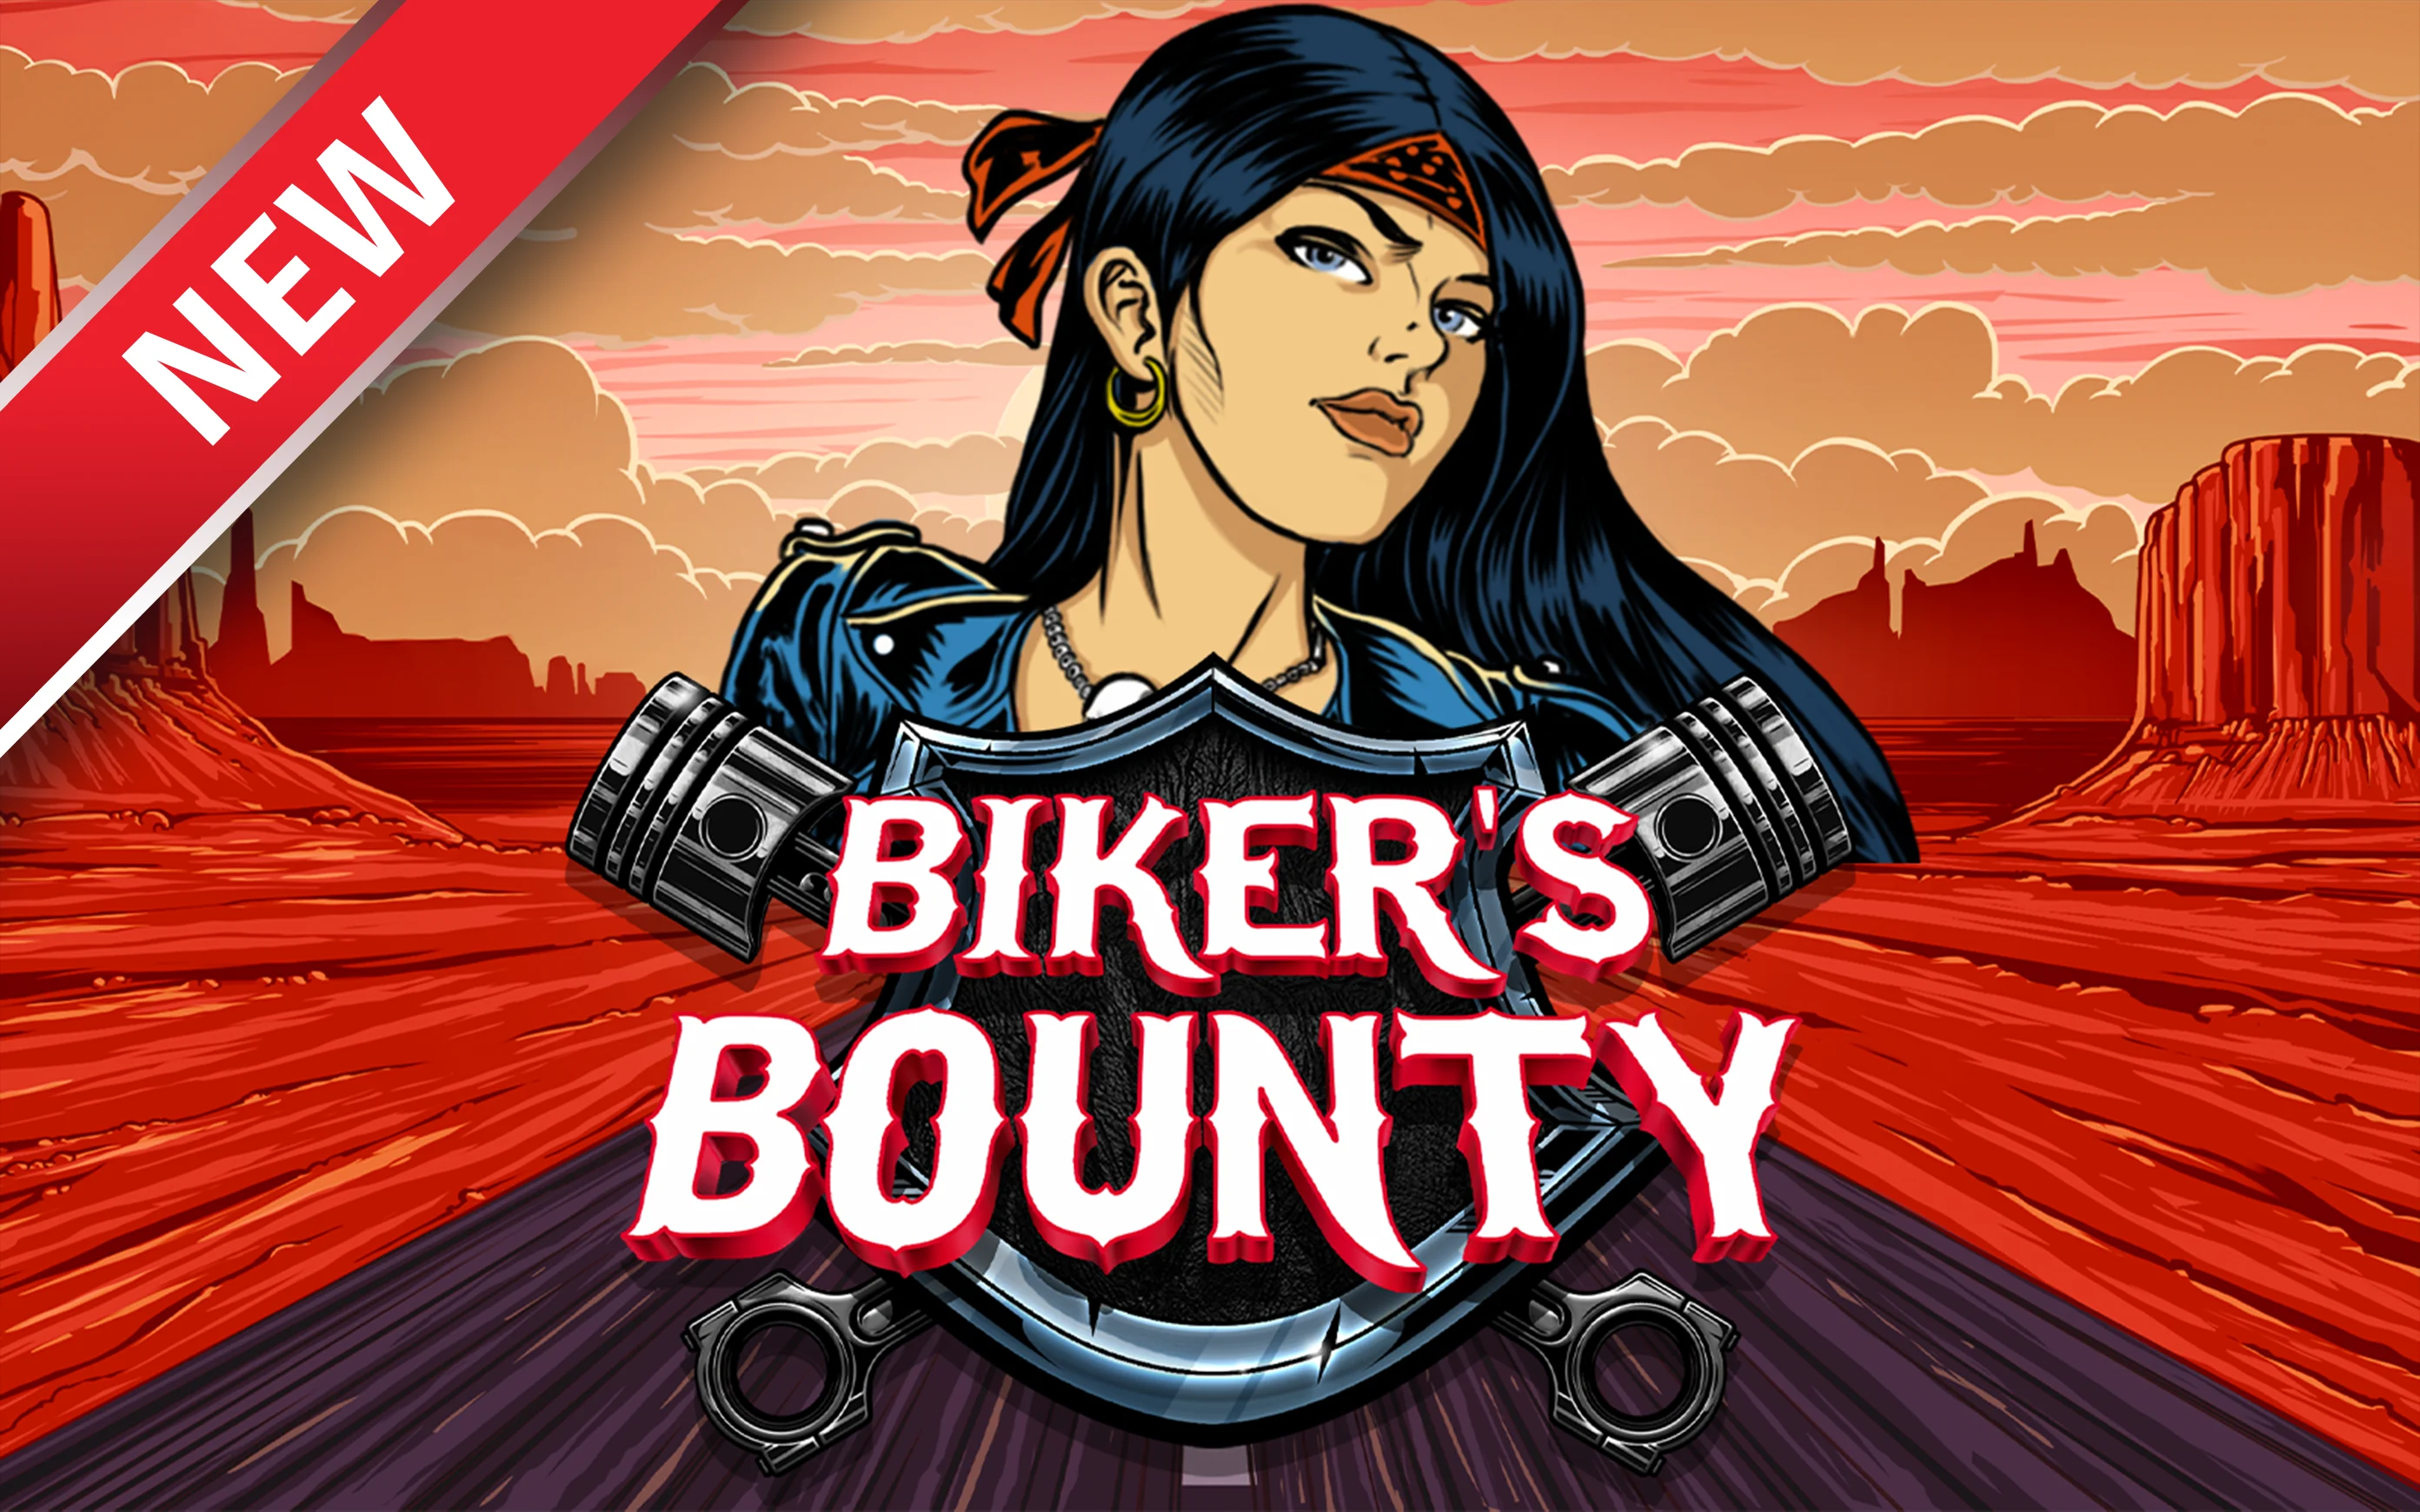 Zagraj w Biker's Bounty w kasynie online Starcasino.be